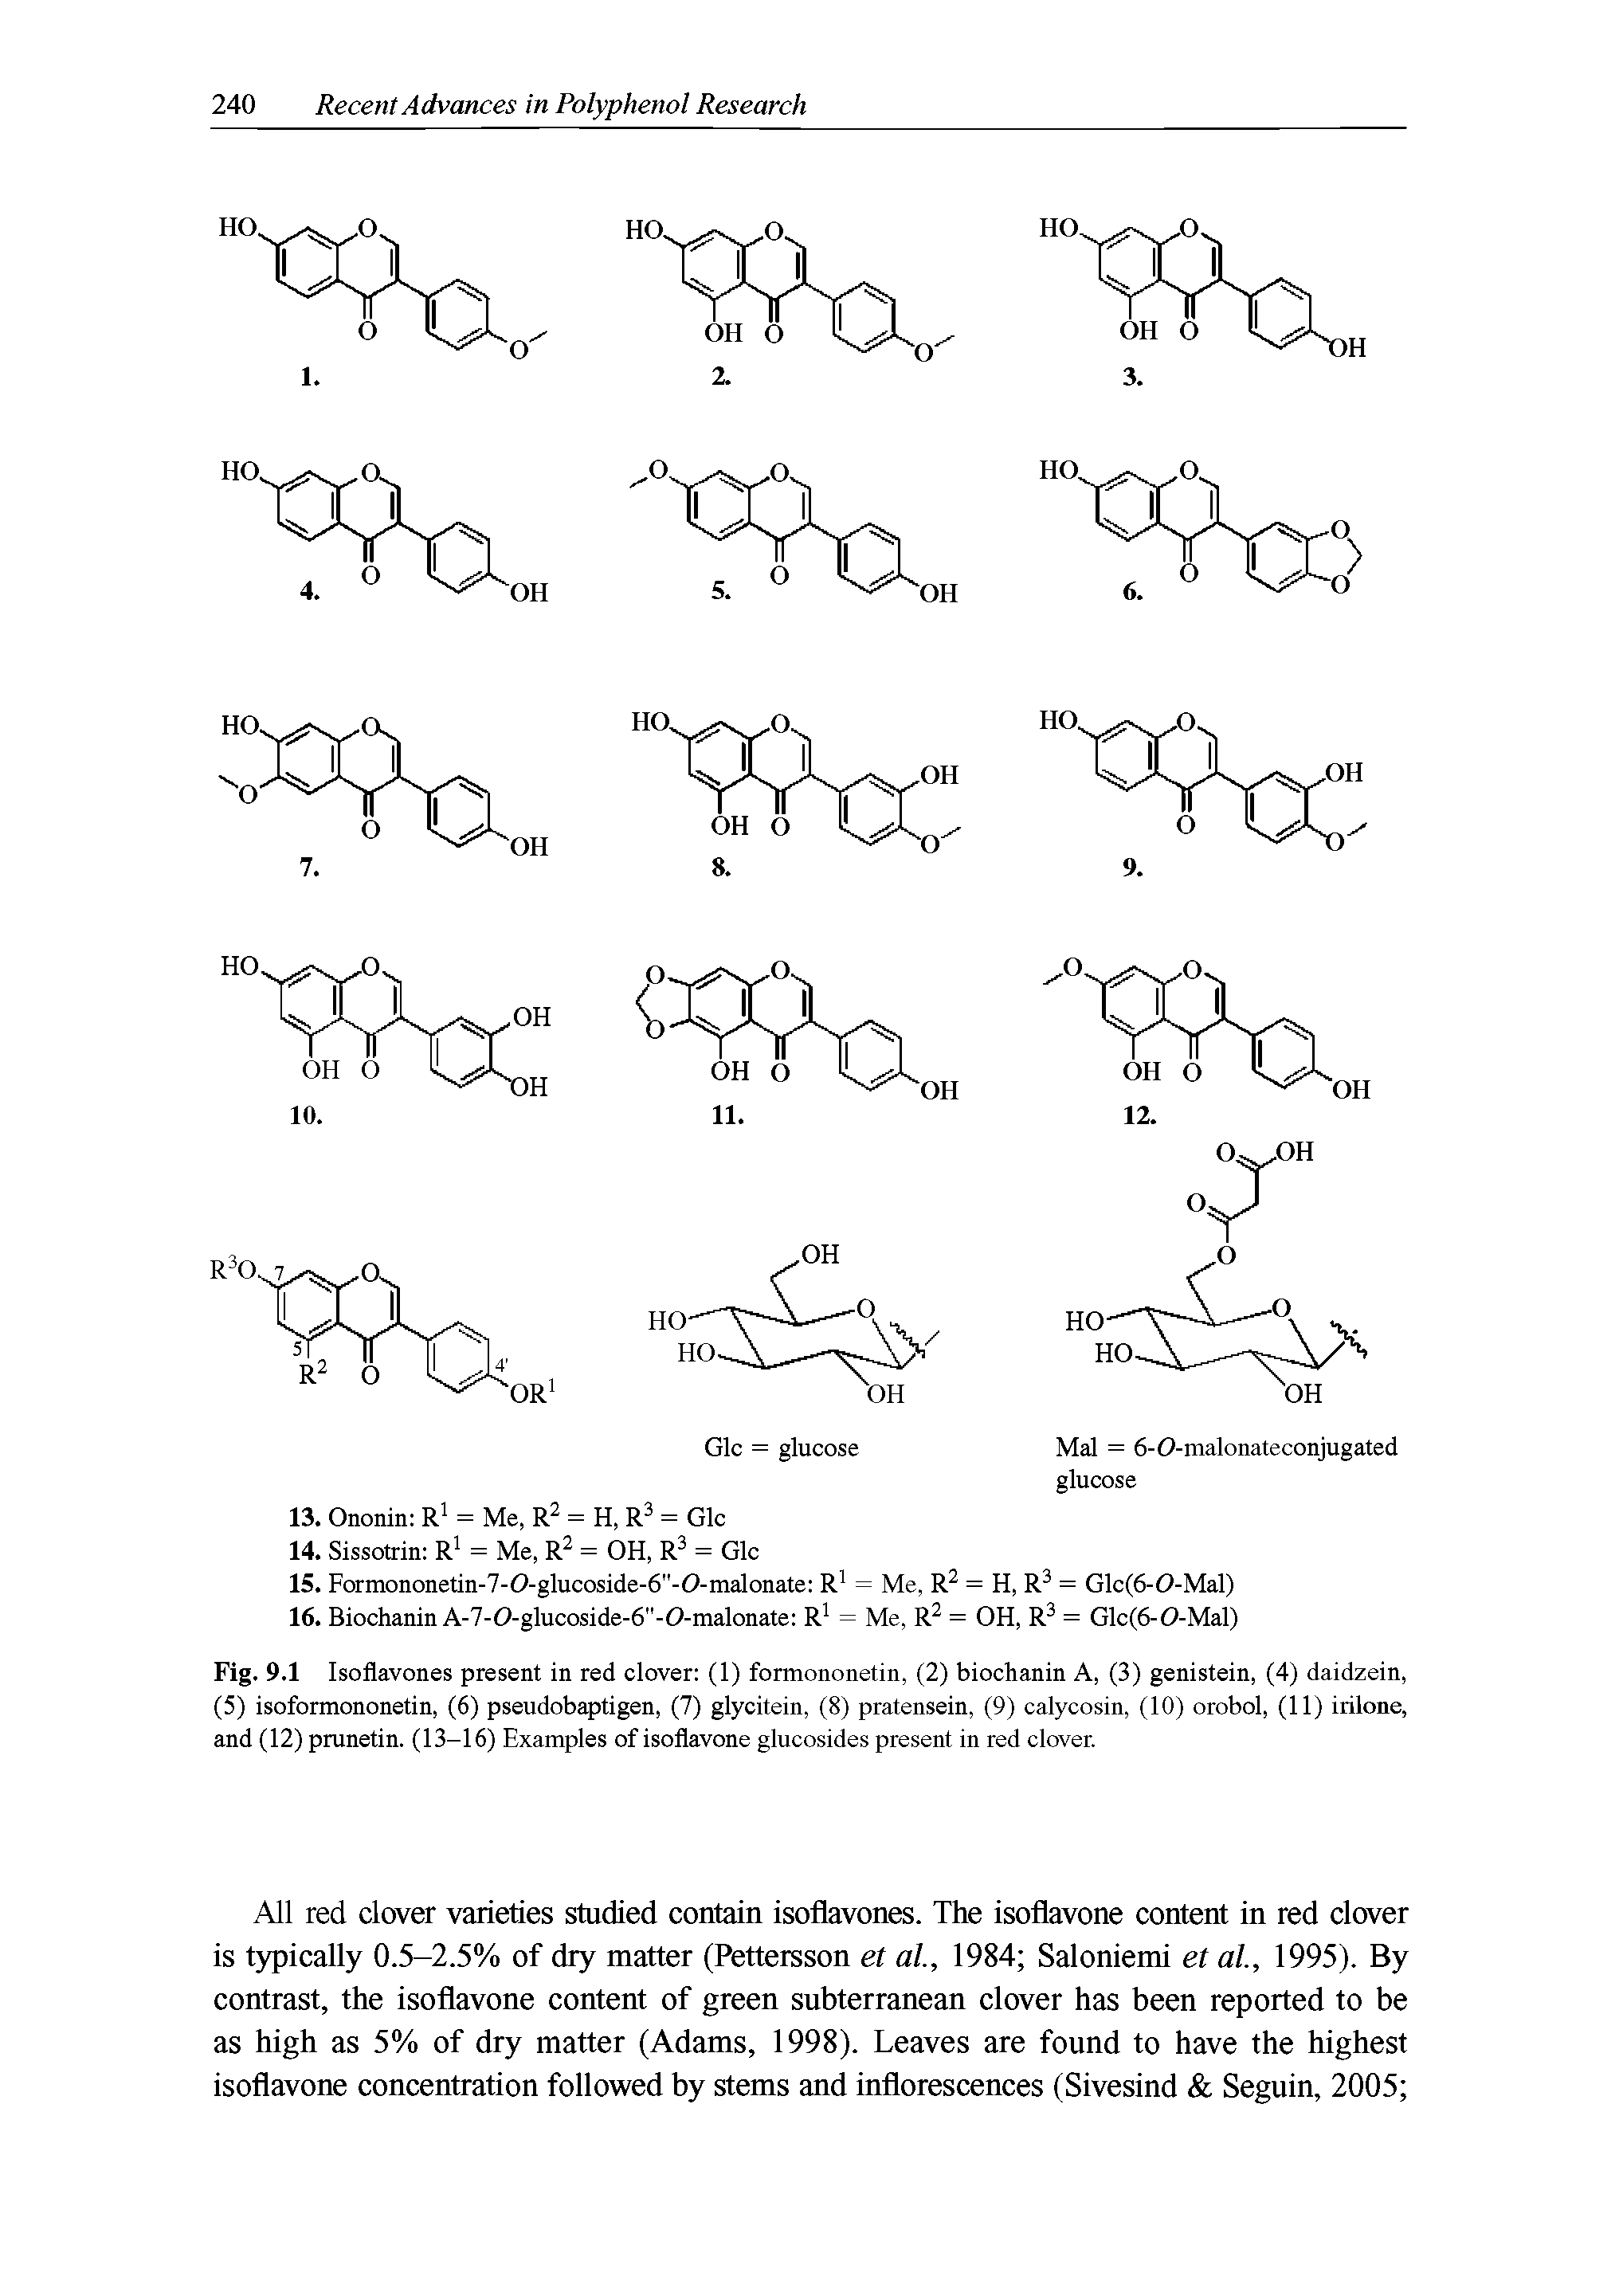 Fig. 9.1 Isoflavones present in red clover (1) formononetin, (2) biochanin A, (3) genistein, (4) daidzein, (5) isoformononetin, (6) pseudobaptigen, (7) glycitein, (8) pratensein, (9) calycosin, (10) orobol, (11) irilone, and (12) prunetin. (13-16) Examples of isoflavone glucosides present in red clover.